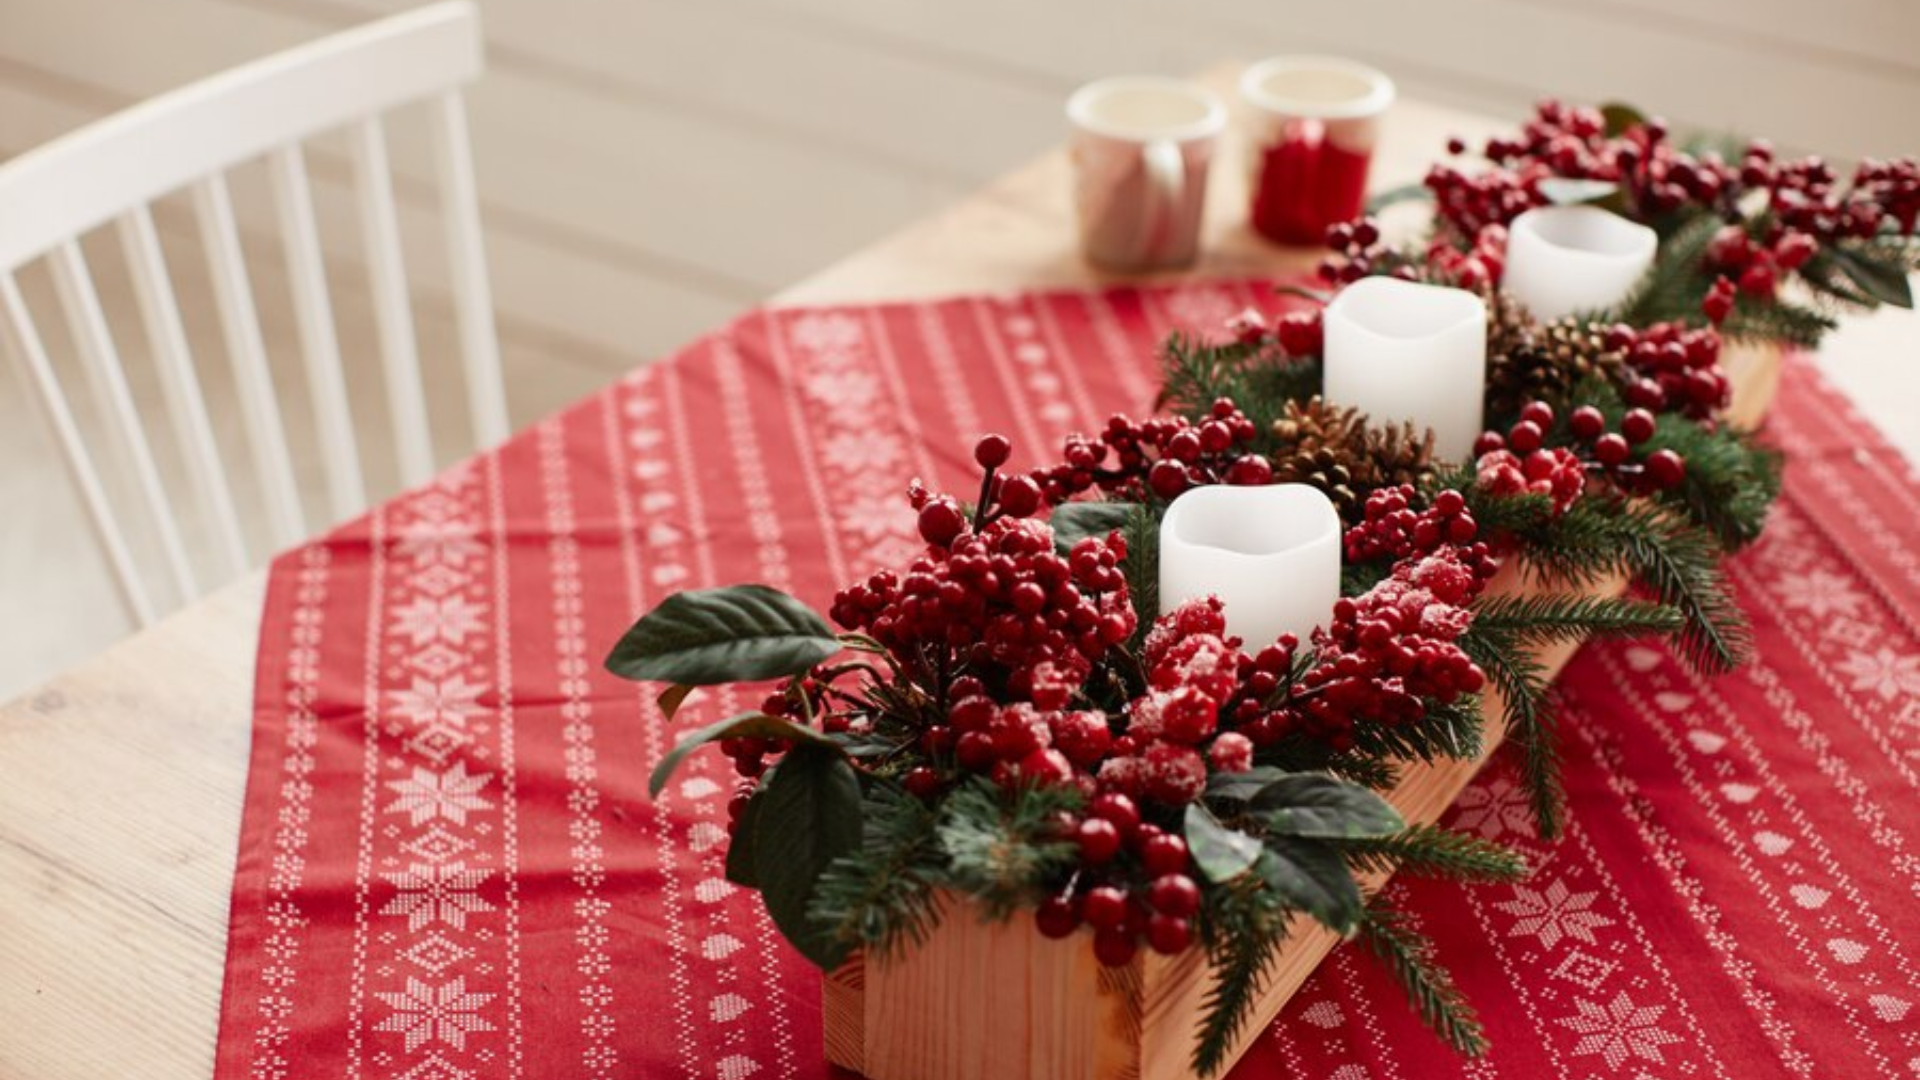 Especialistas explicam principais erros e dão dicas para montar um mesa de Natal incrível. Confira